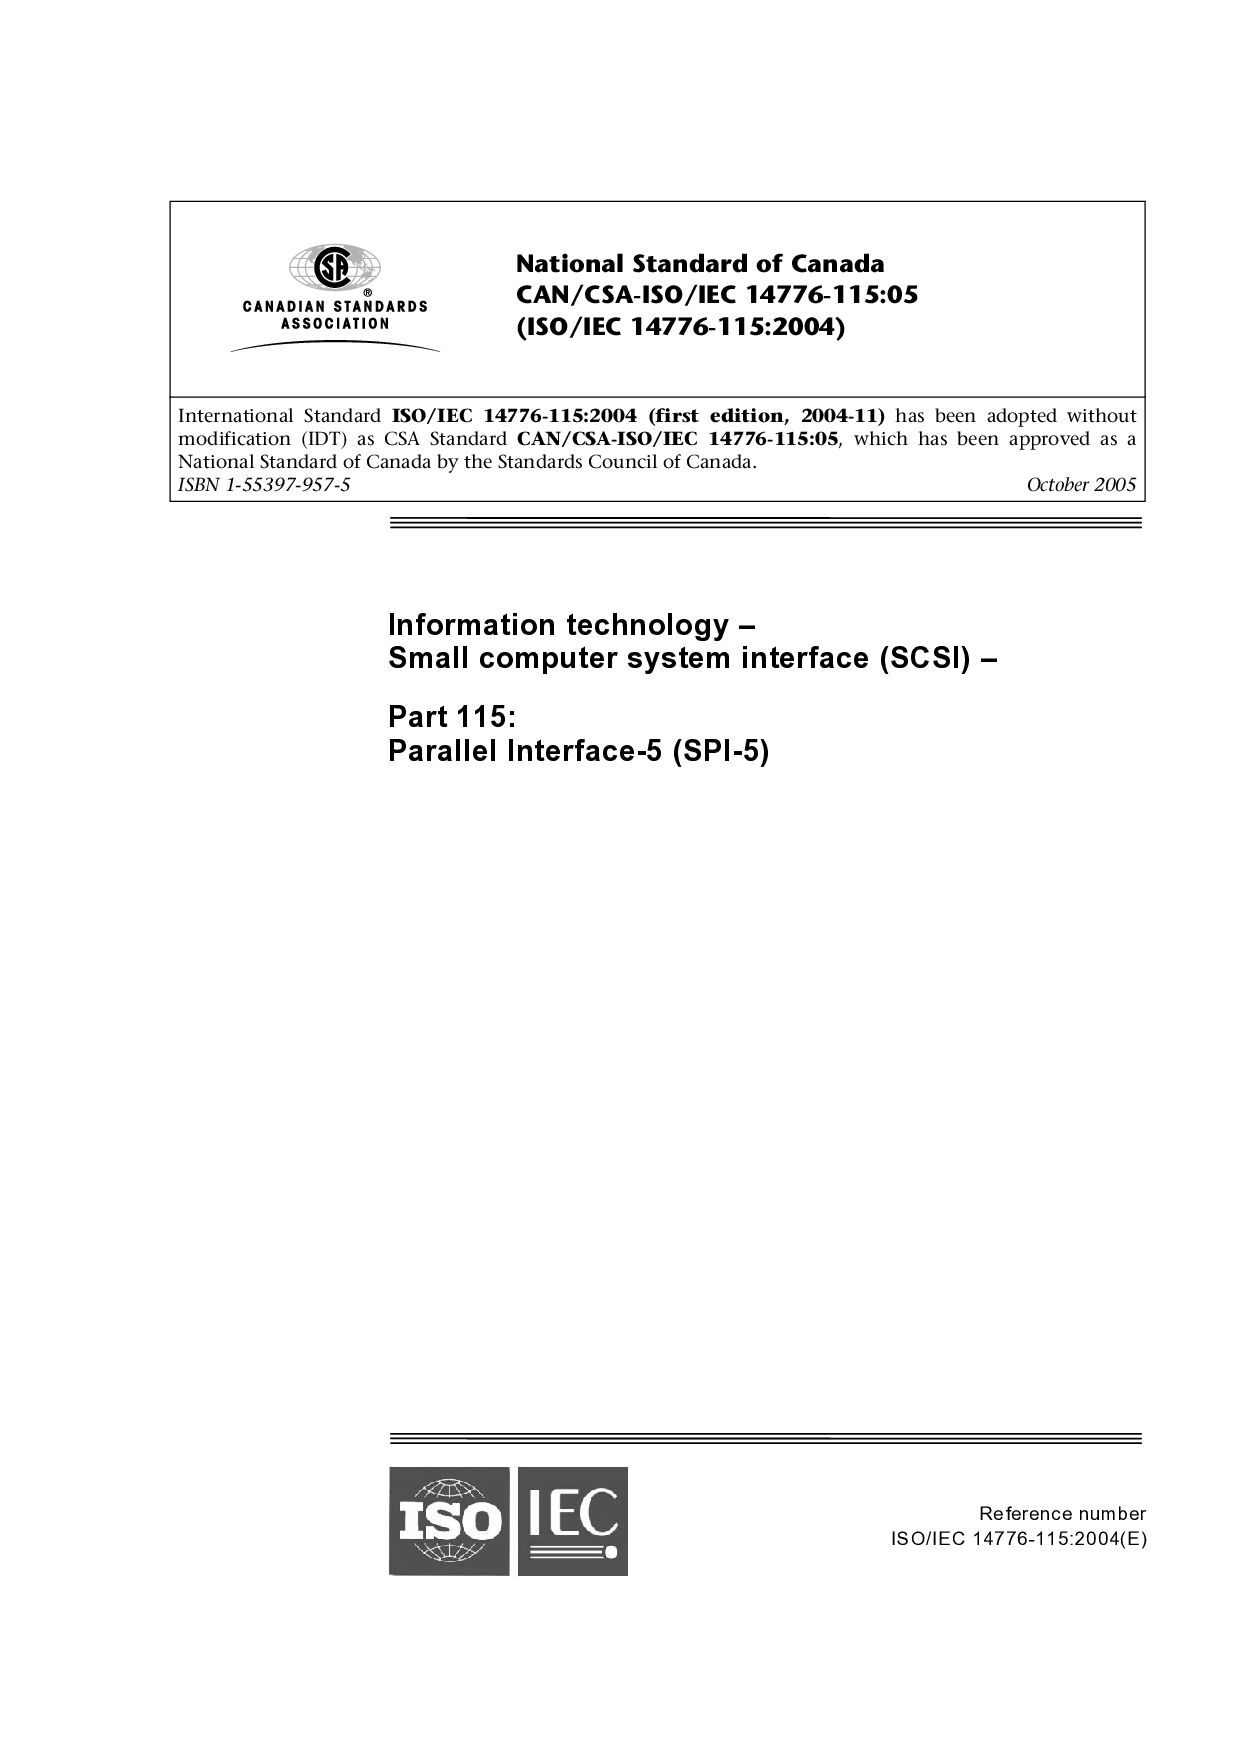 CAN/CSA-ISO/IEC 14776-115:2005封面图